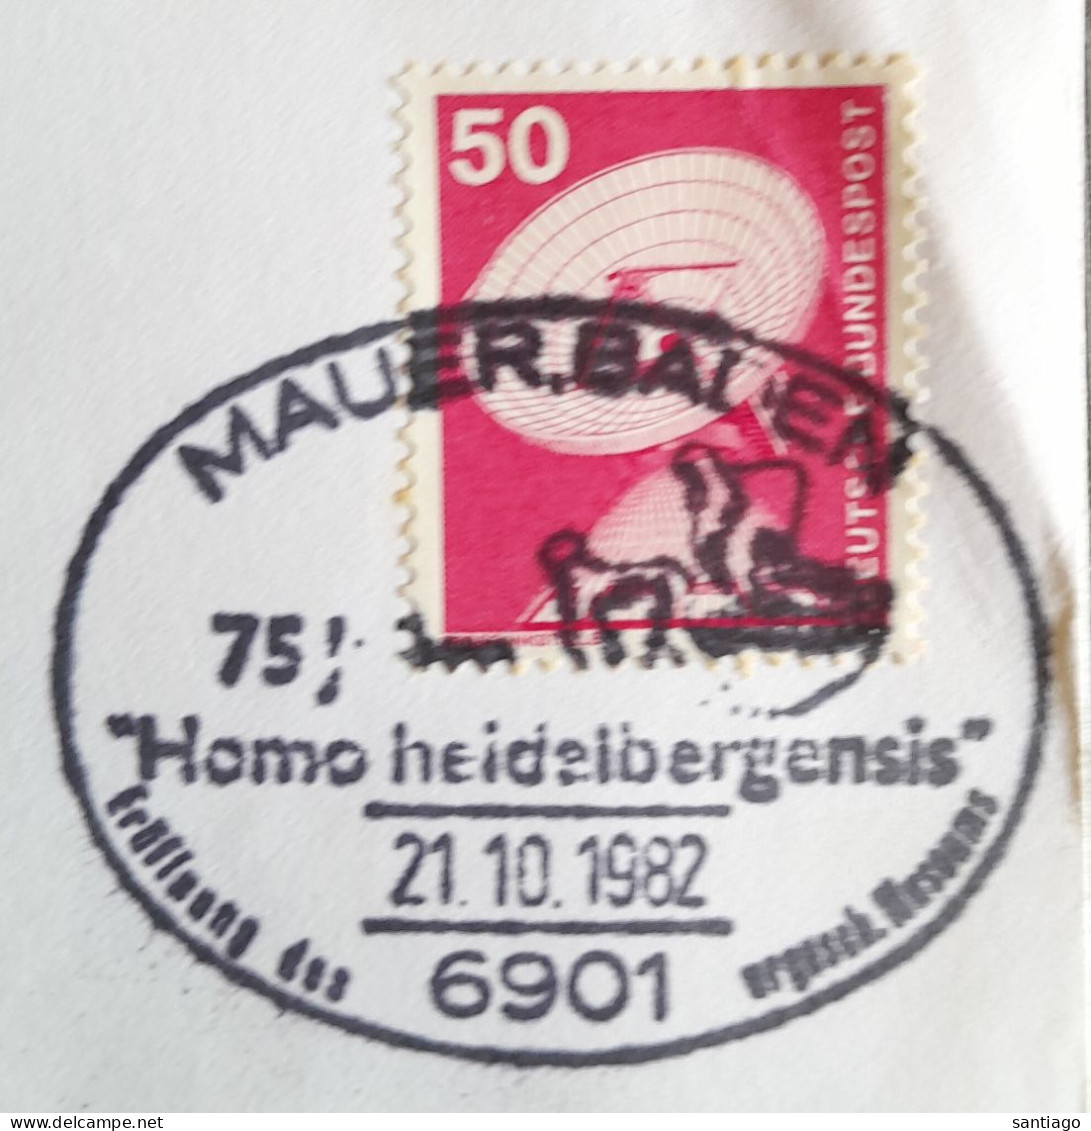 Duitsland  Mauer Baden / Homo Heidelbergensis - Archeologie